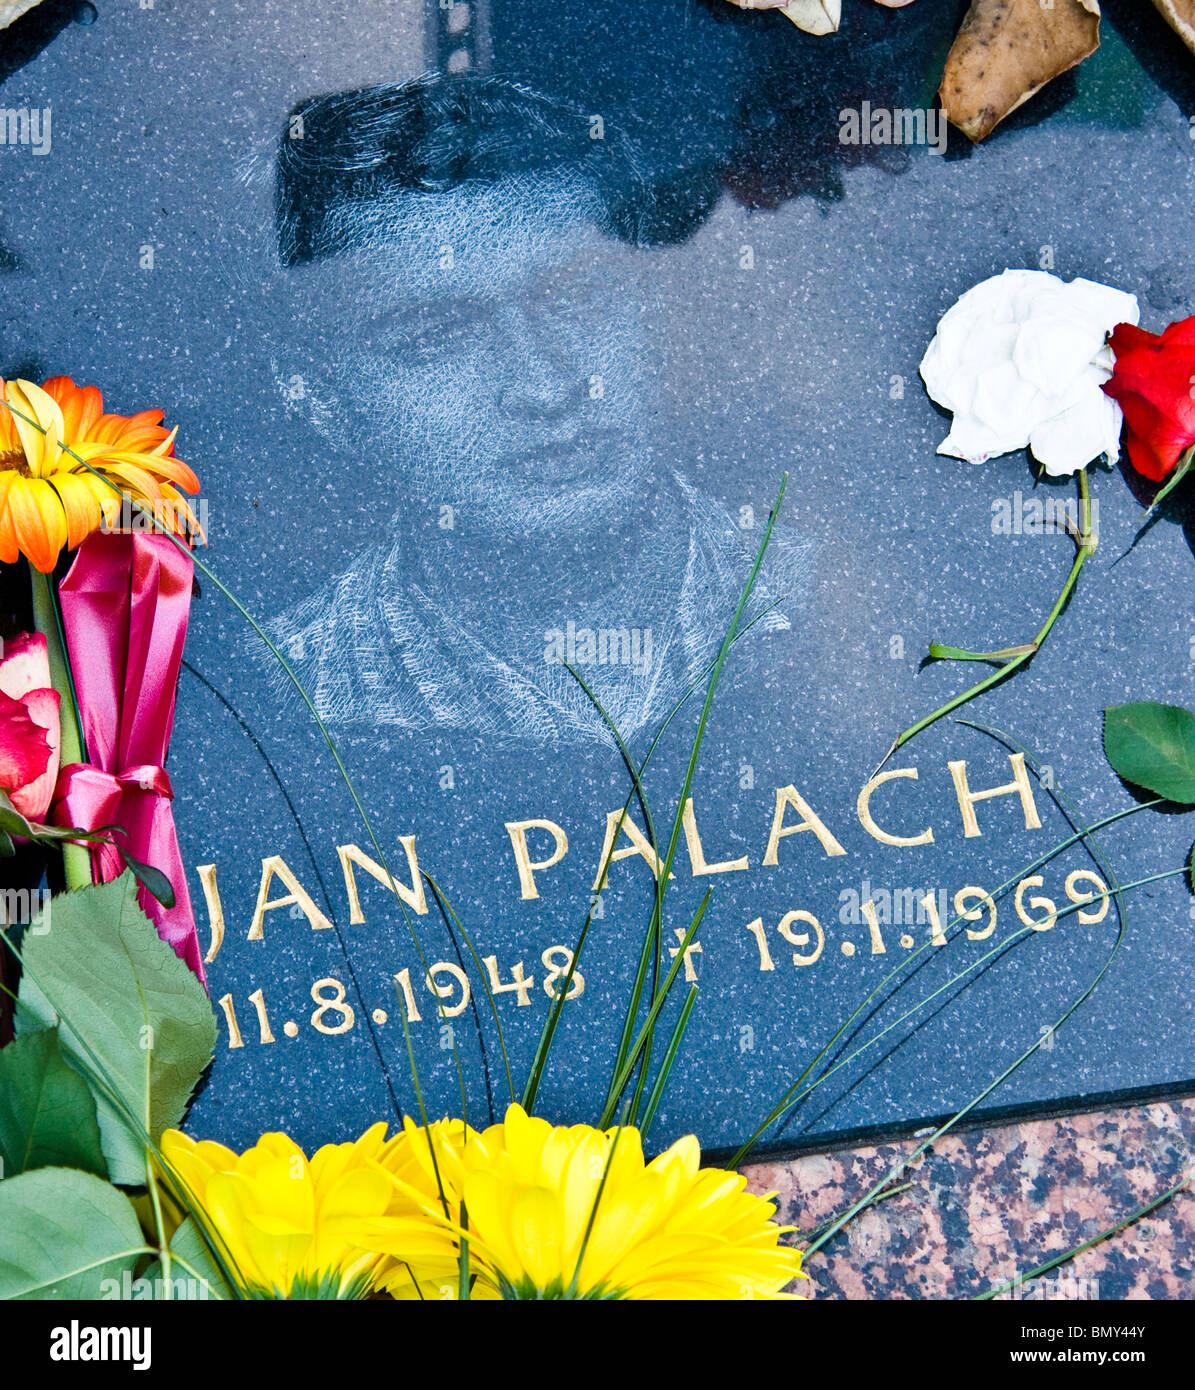 Monument aux héros de l'étudiant tchèque Jan Palach martyr manifestant dans la place Venceslas Prague République tchèque l'Europe de l'Est Banque D'Images